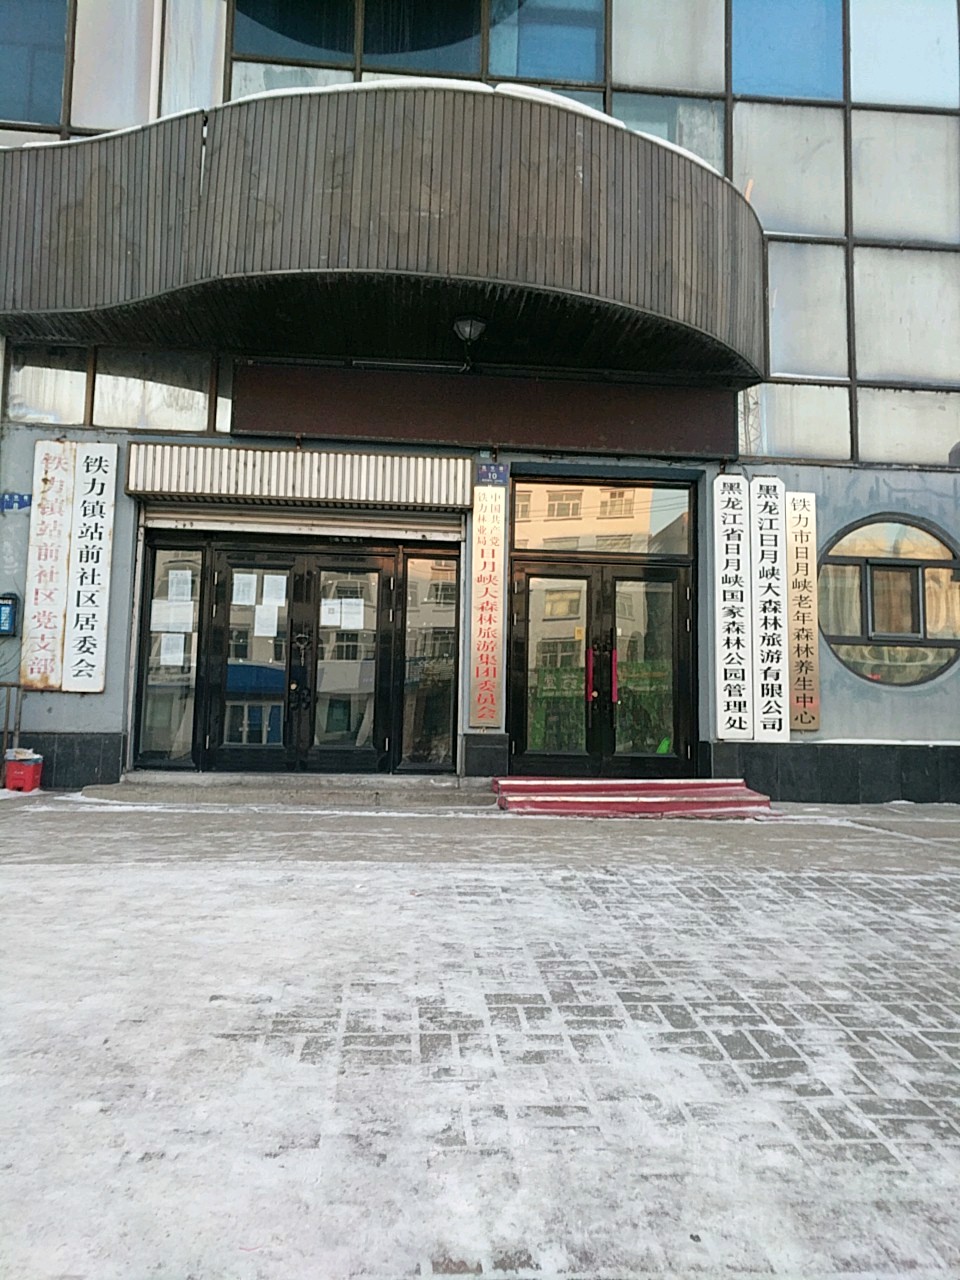 铁力市地址(位置,怎么去,怎么走):  黑龙江省伊春市铁力市正阳大街49